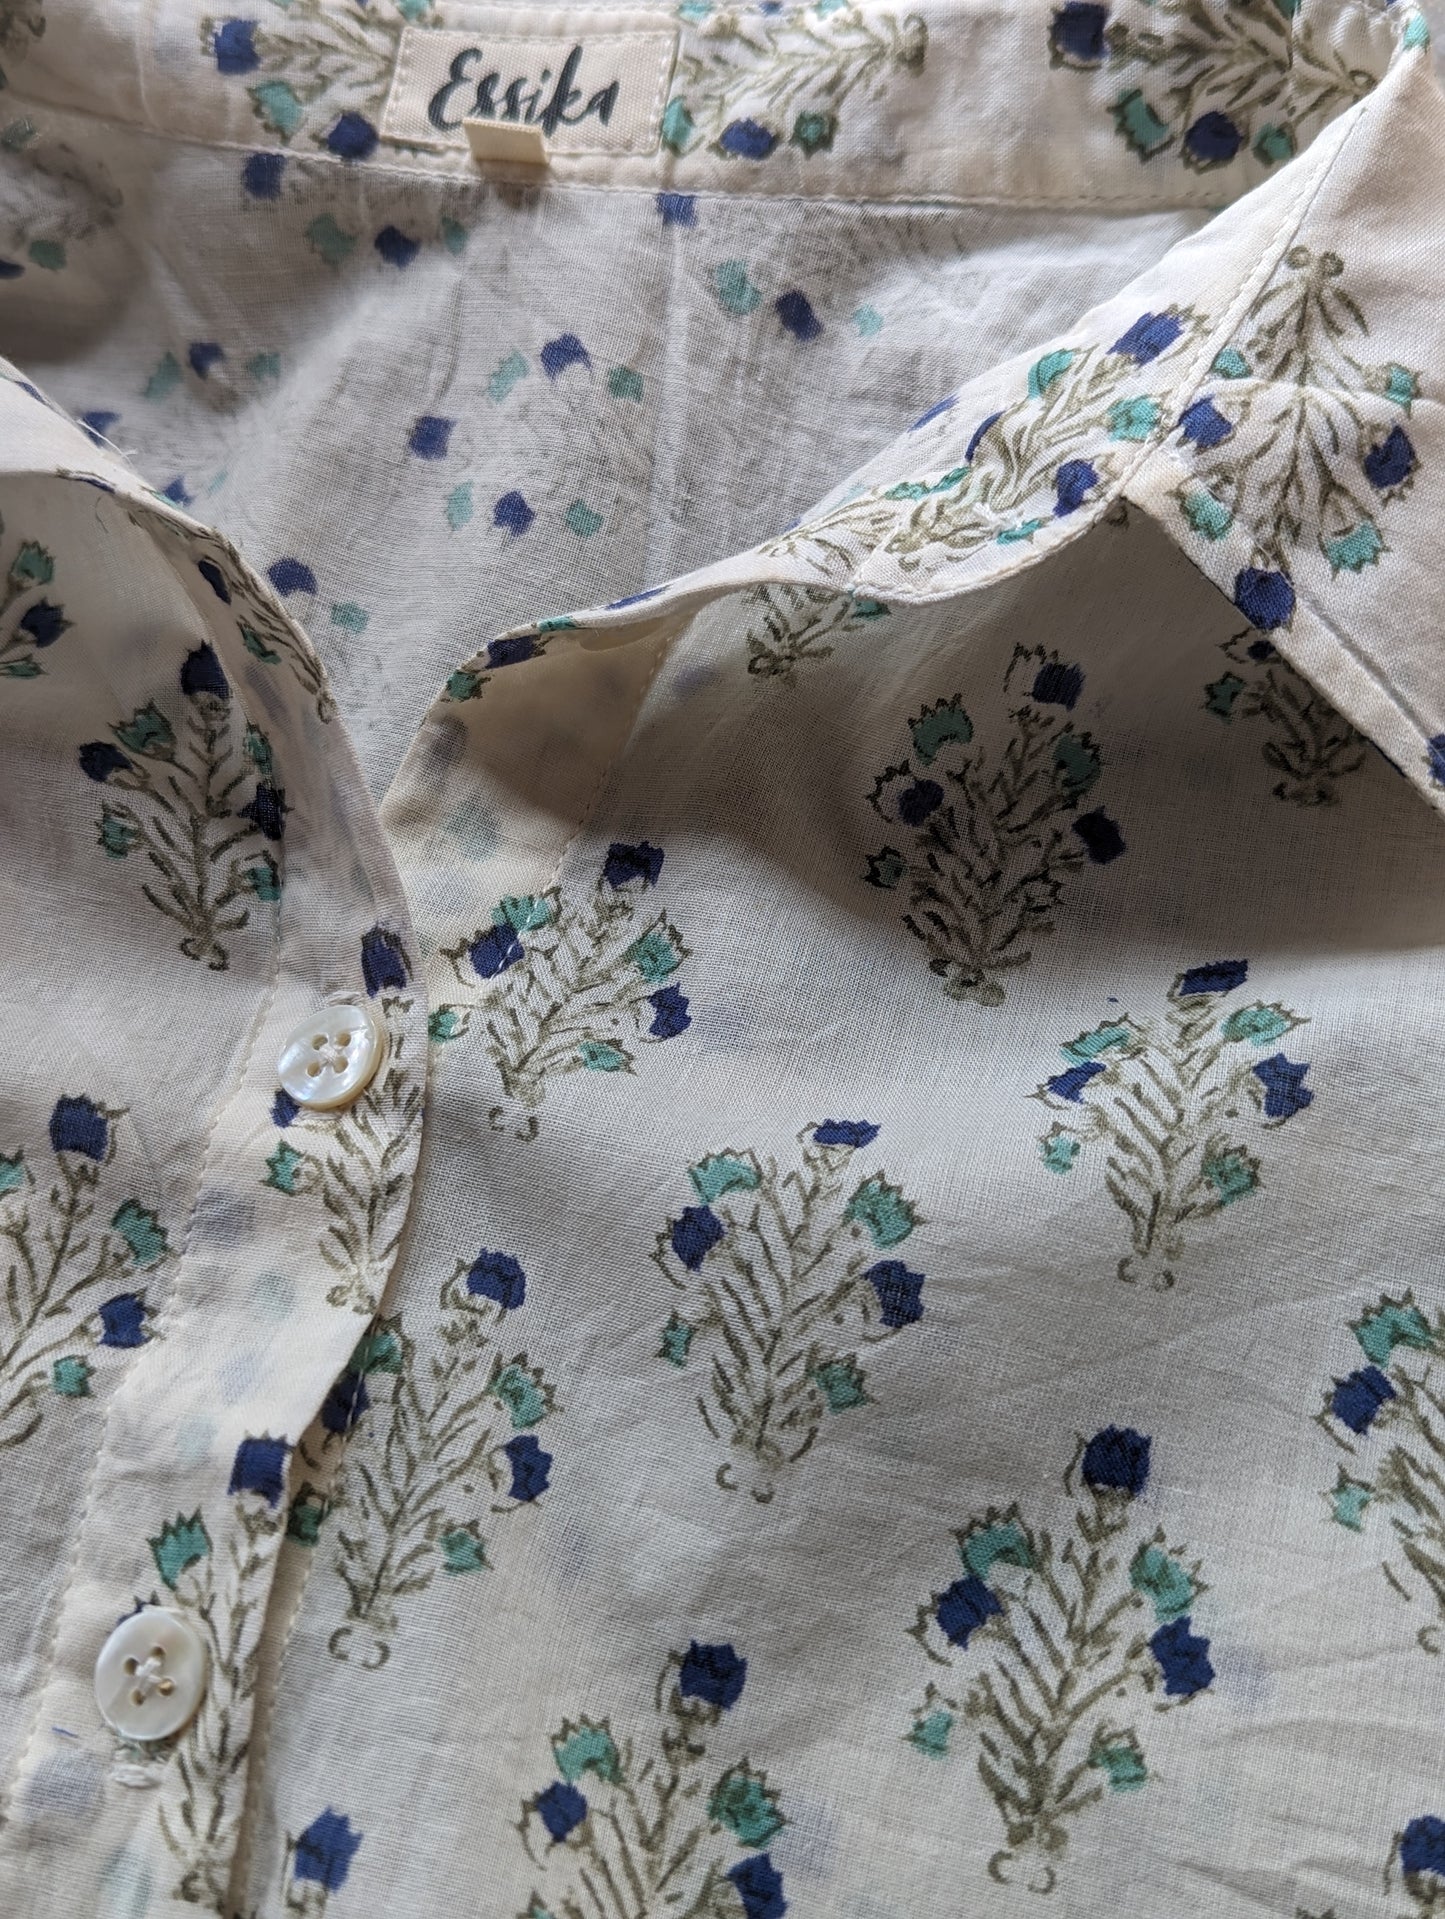 Women's Cotton Regular Shirt and Pant Set - Teal and Indigo - Closeup Image